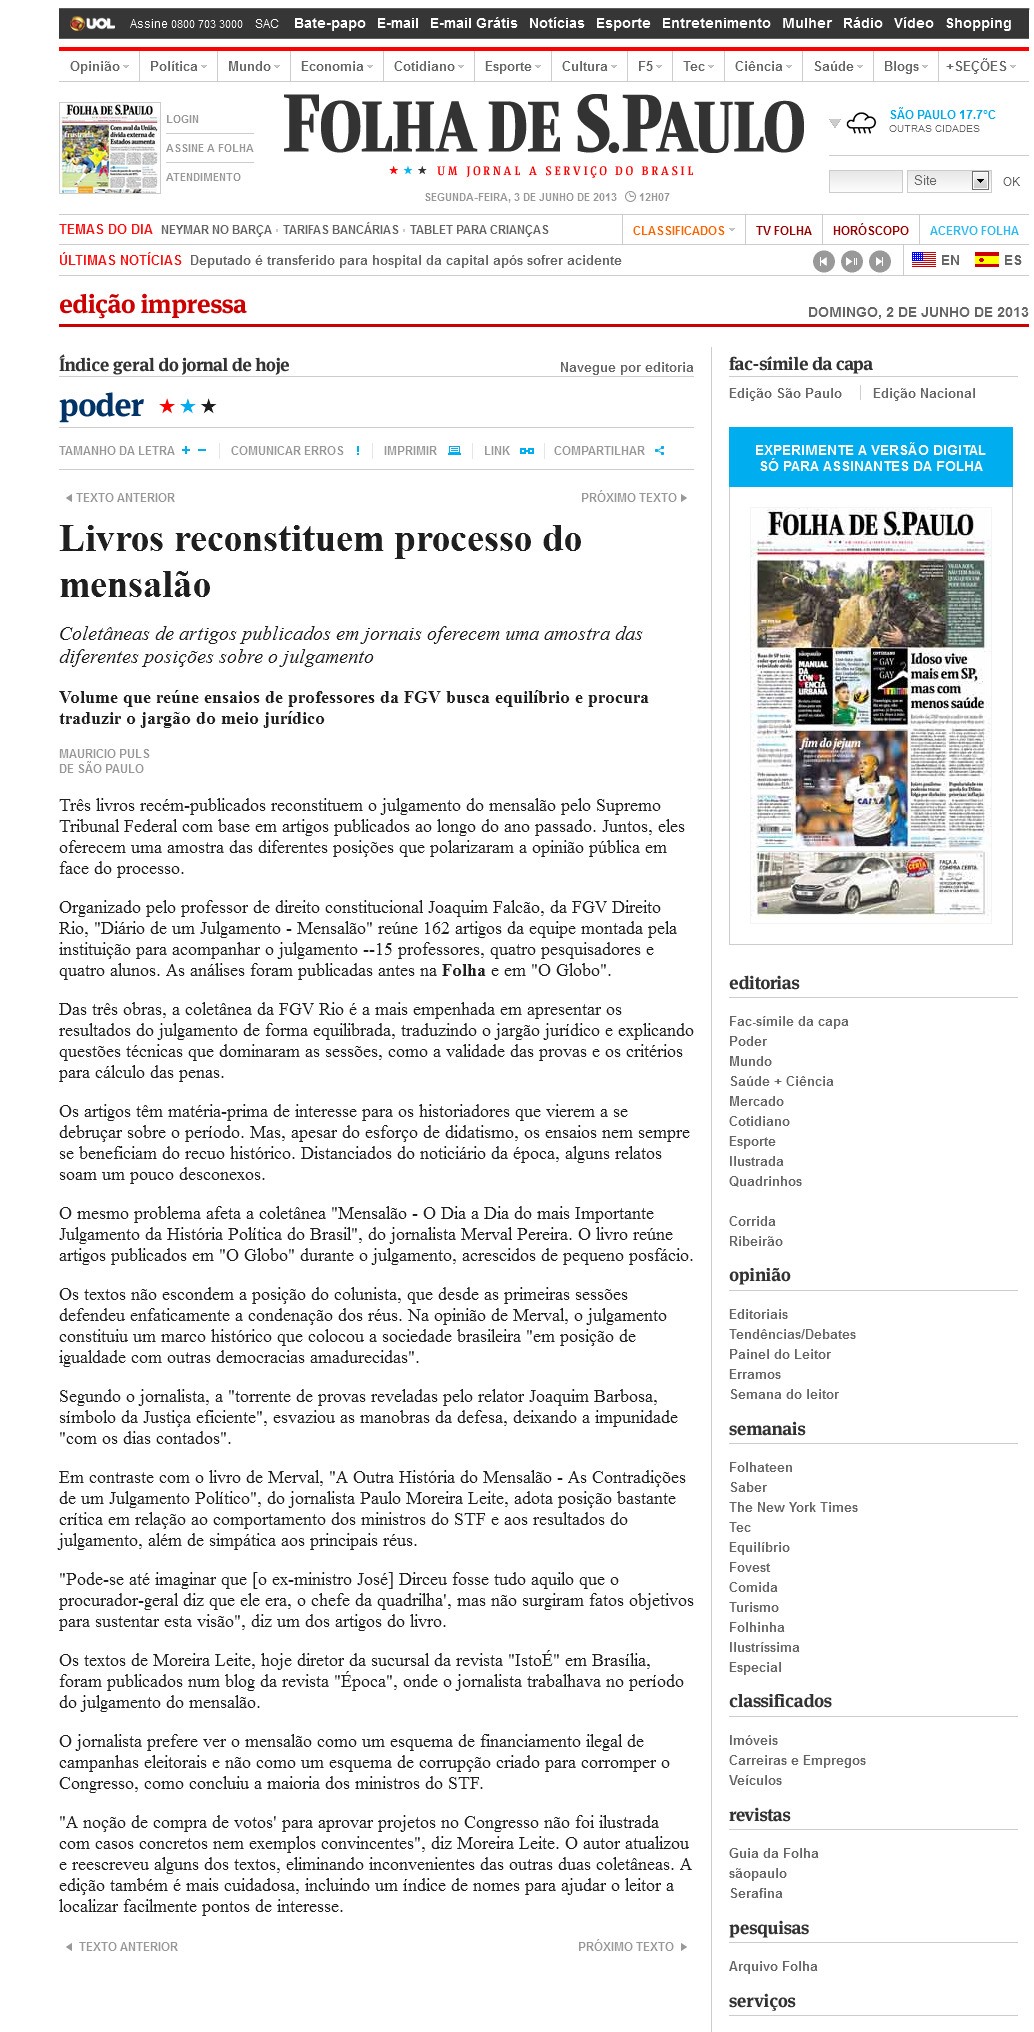 Folha de S.Paulo_02.06.2013